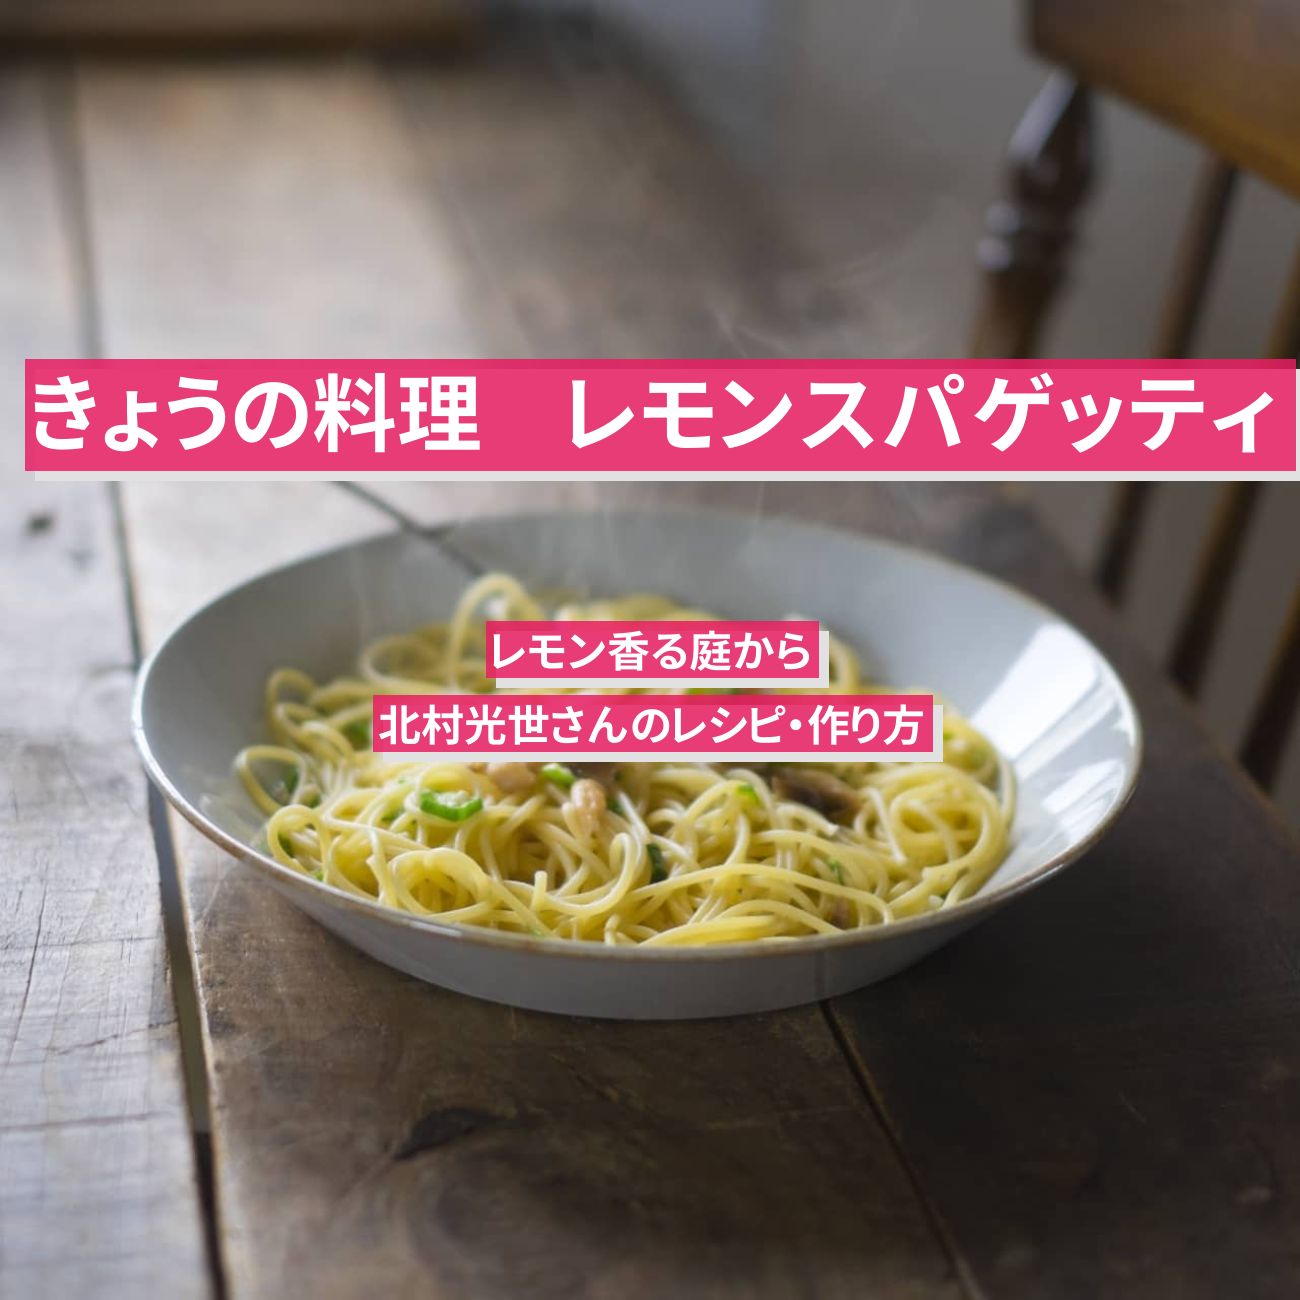 【きょうの料理】『レモンスパゲッティ』北村光世さんのレシピ・作り方